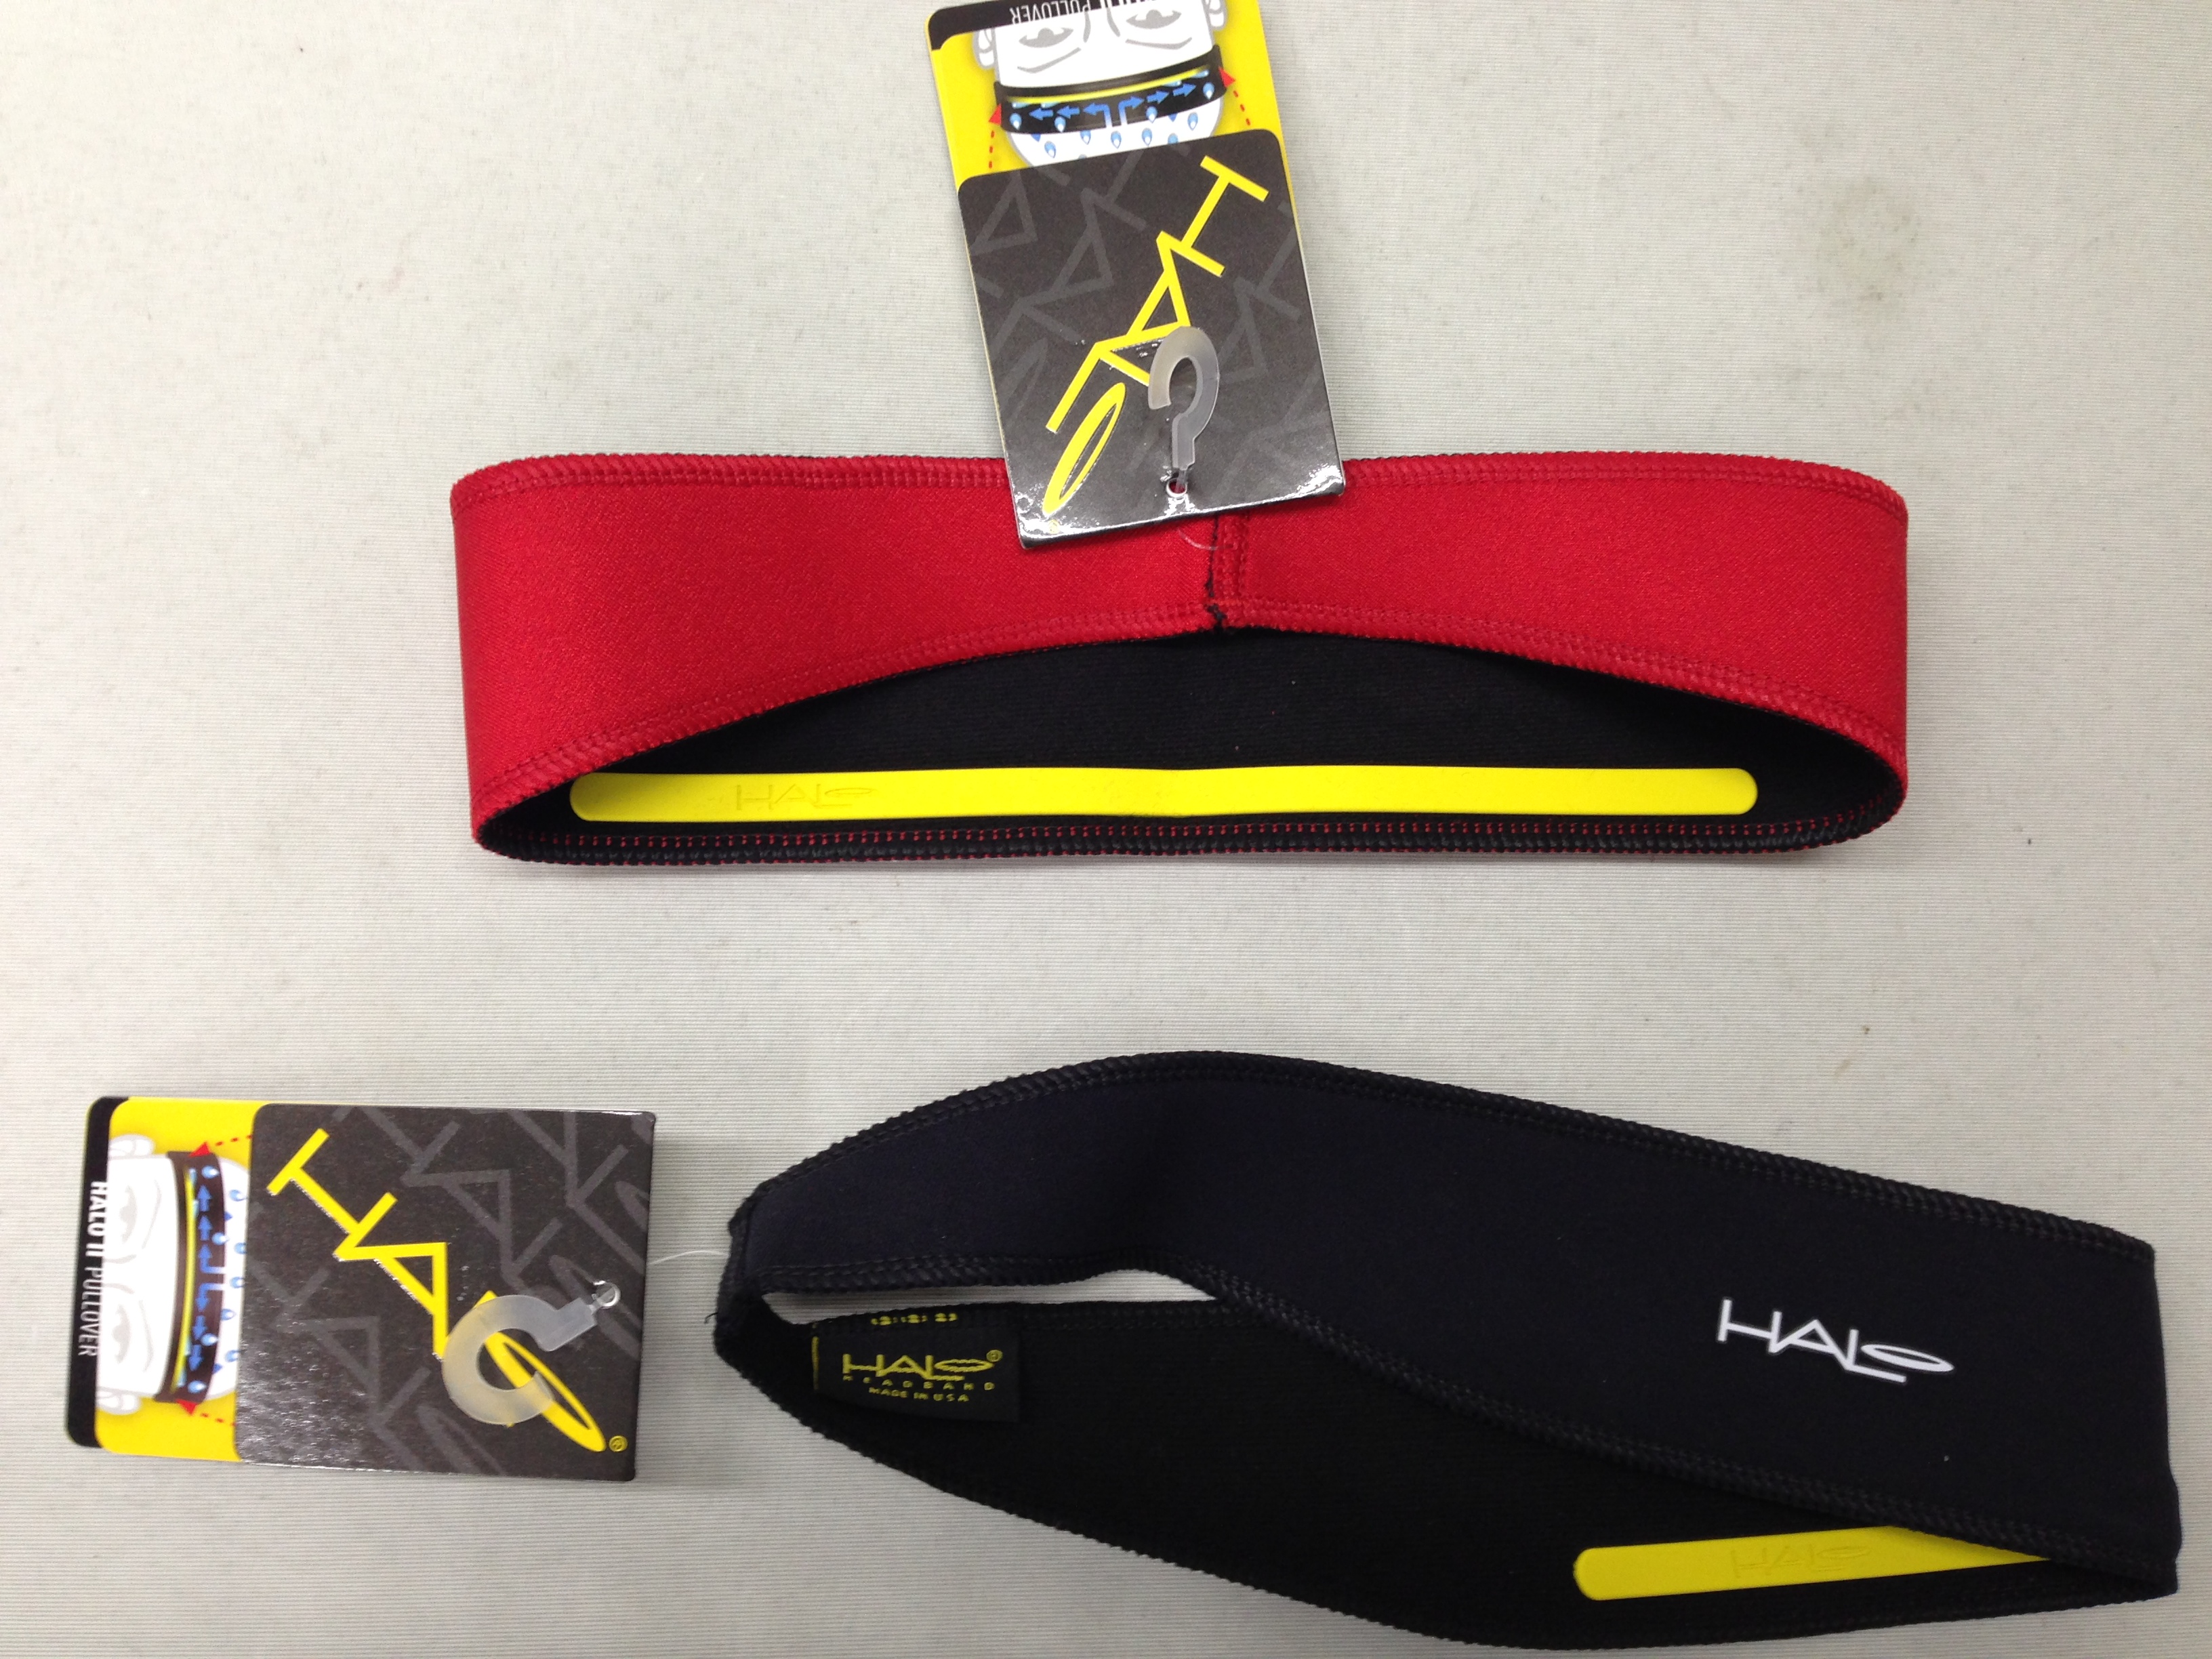 Halo headband（ヘイロ ヘッドバンド） -INFINITY-兵庫県唯一のロードバイクを専門とするショップです。